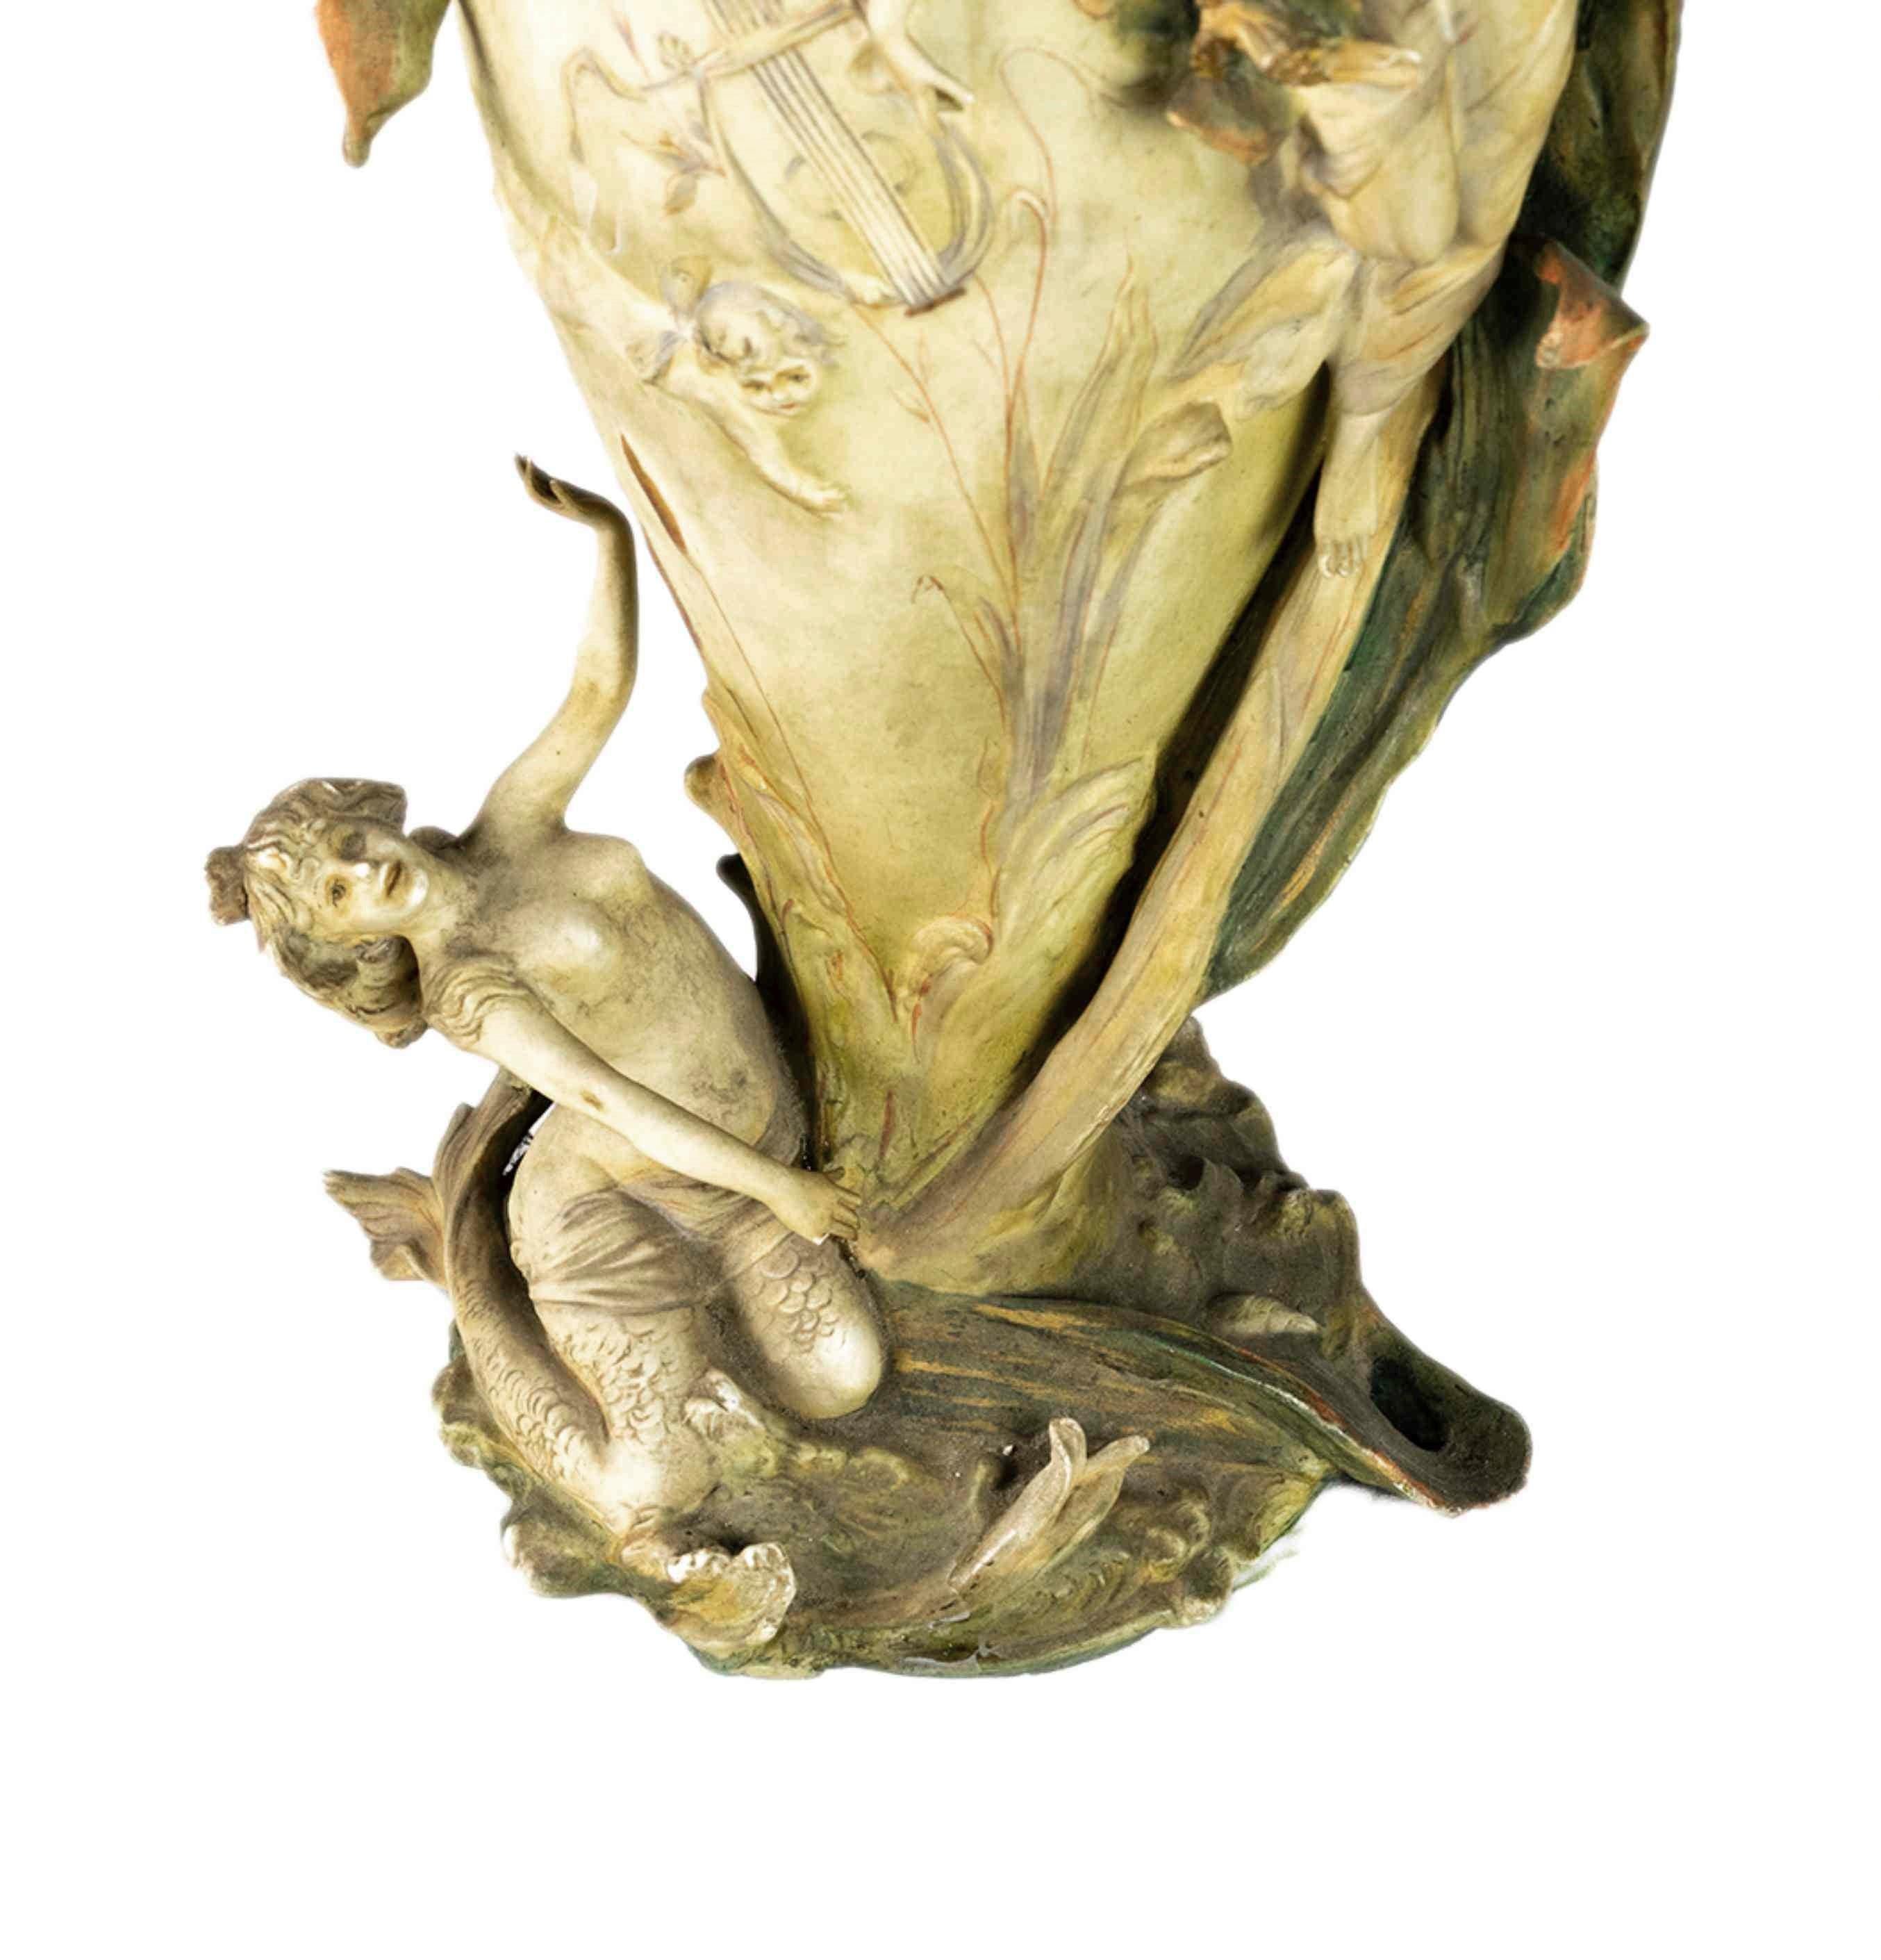 Une étonnante amphore de style Jugendstil provenant de Rudolstadt, en Thuringe, de la manufacture Triebner Ens et de l'artiste Karl Ens Volkstedt. Vase décoré d'un col en forme de fleur d'iris et de vierges couchées dans les parties supérieure et